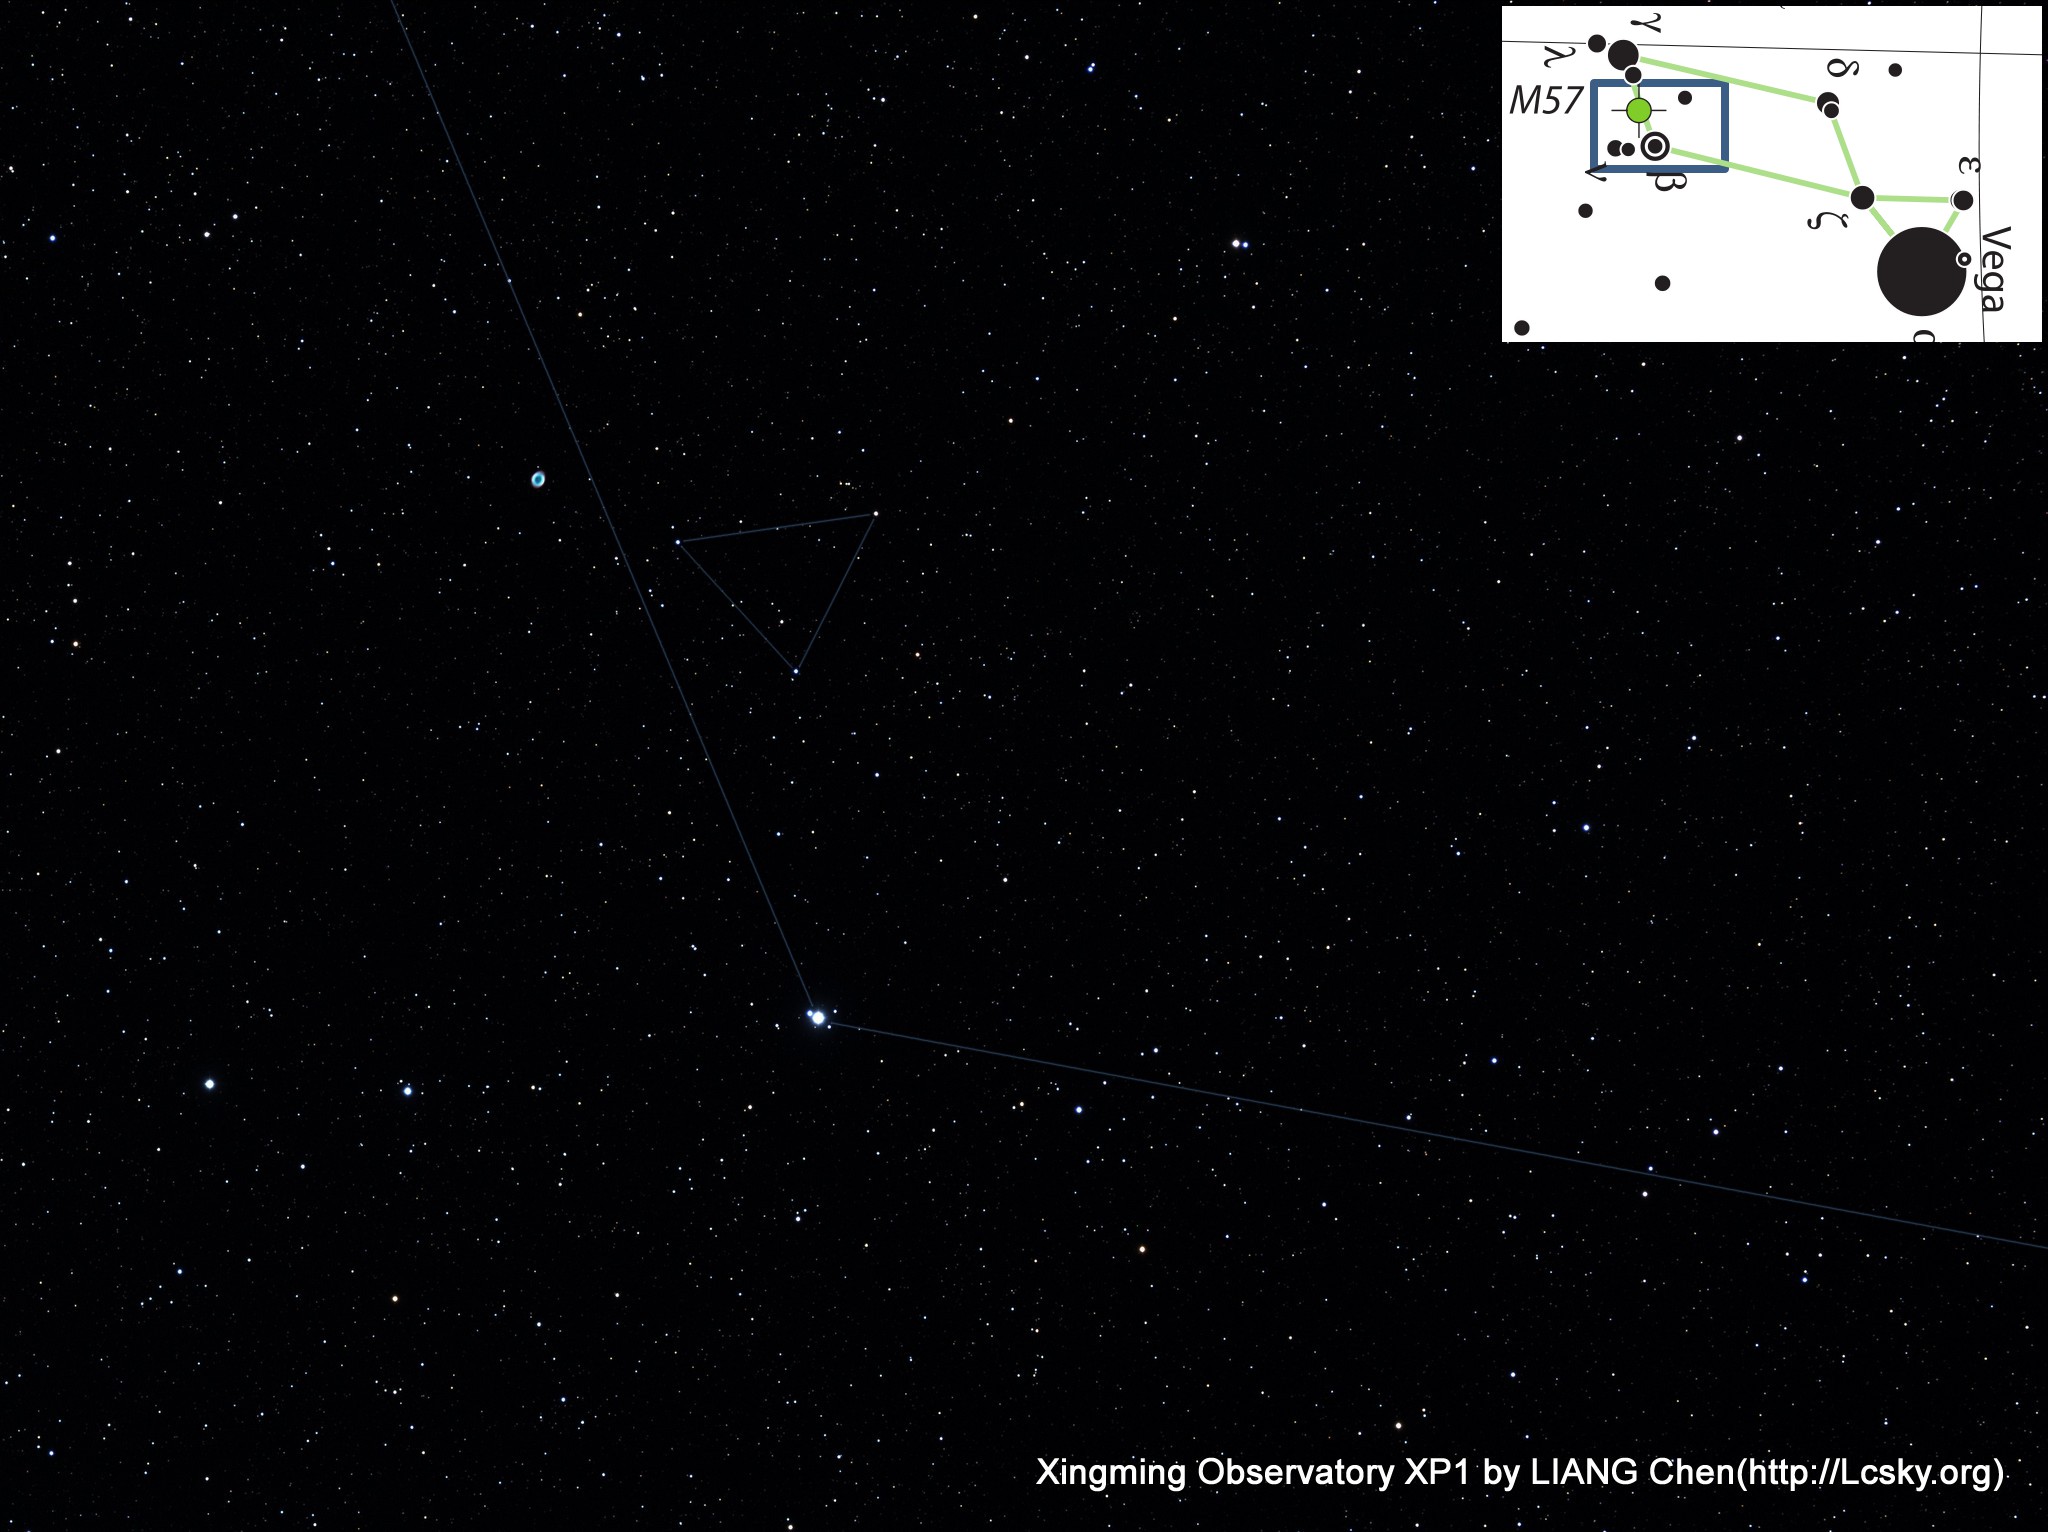 天琴座环状星云(M57)